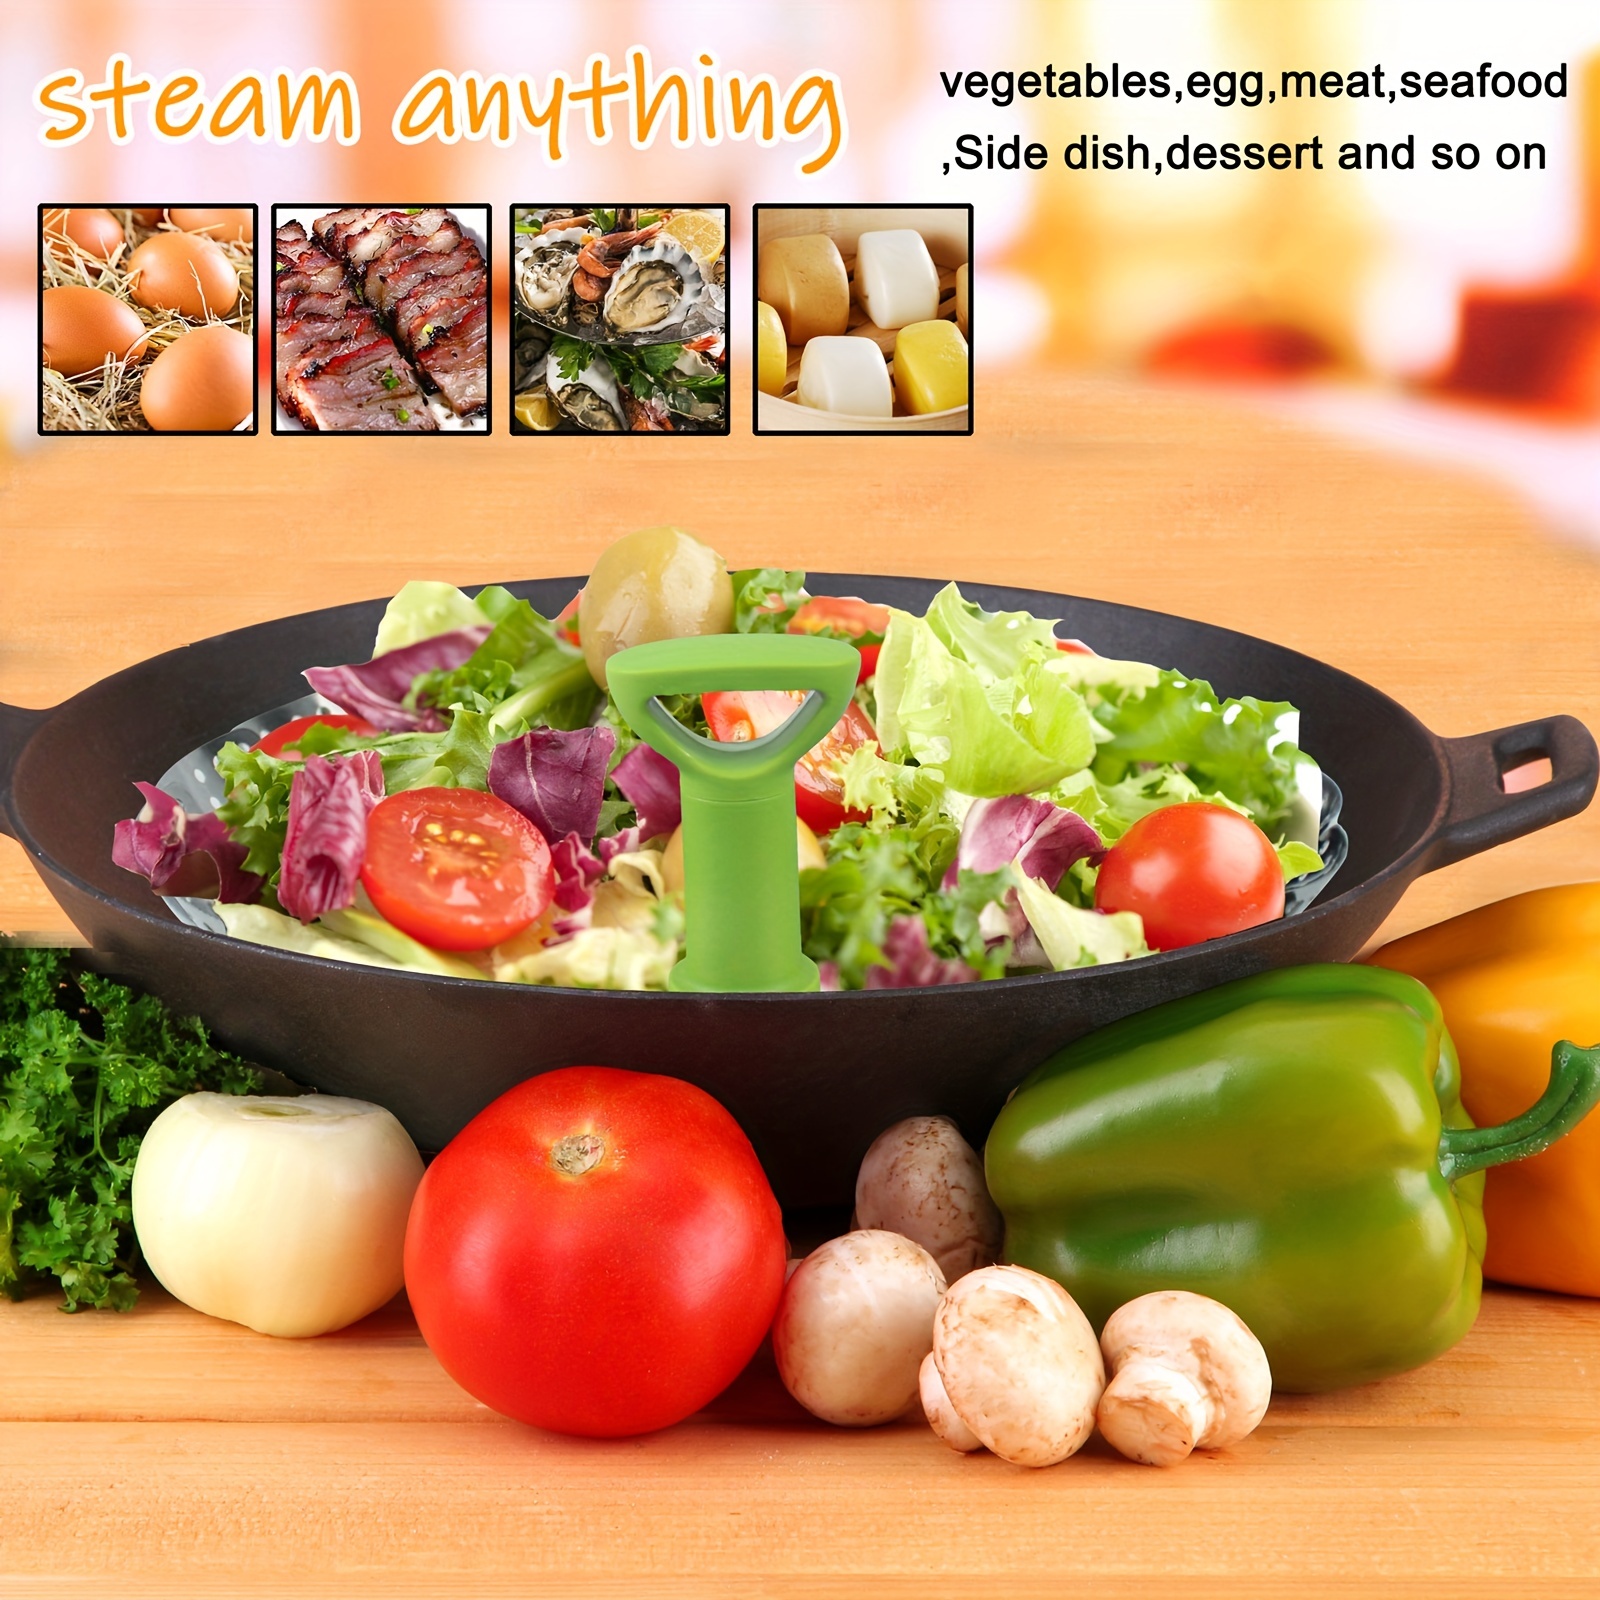 Steamer Basket, Vegetable Steamer for Cooking, Insert Pot Steamer Basket, Veggie Food Steamer, Stainless Steel Steaming Basket, Folding Expandable 